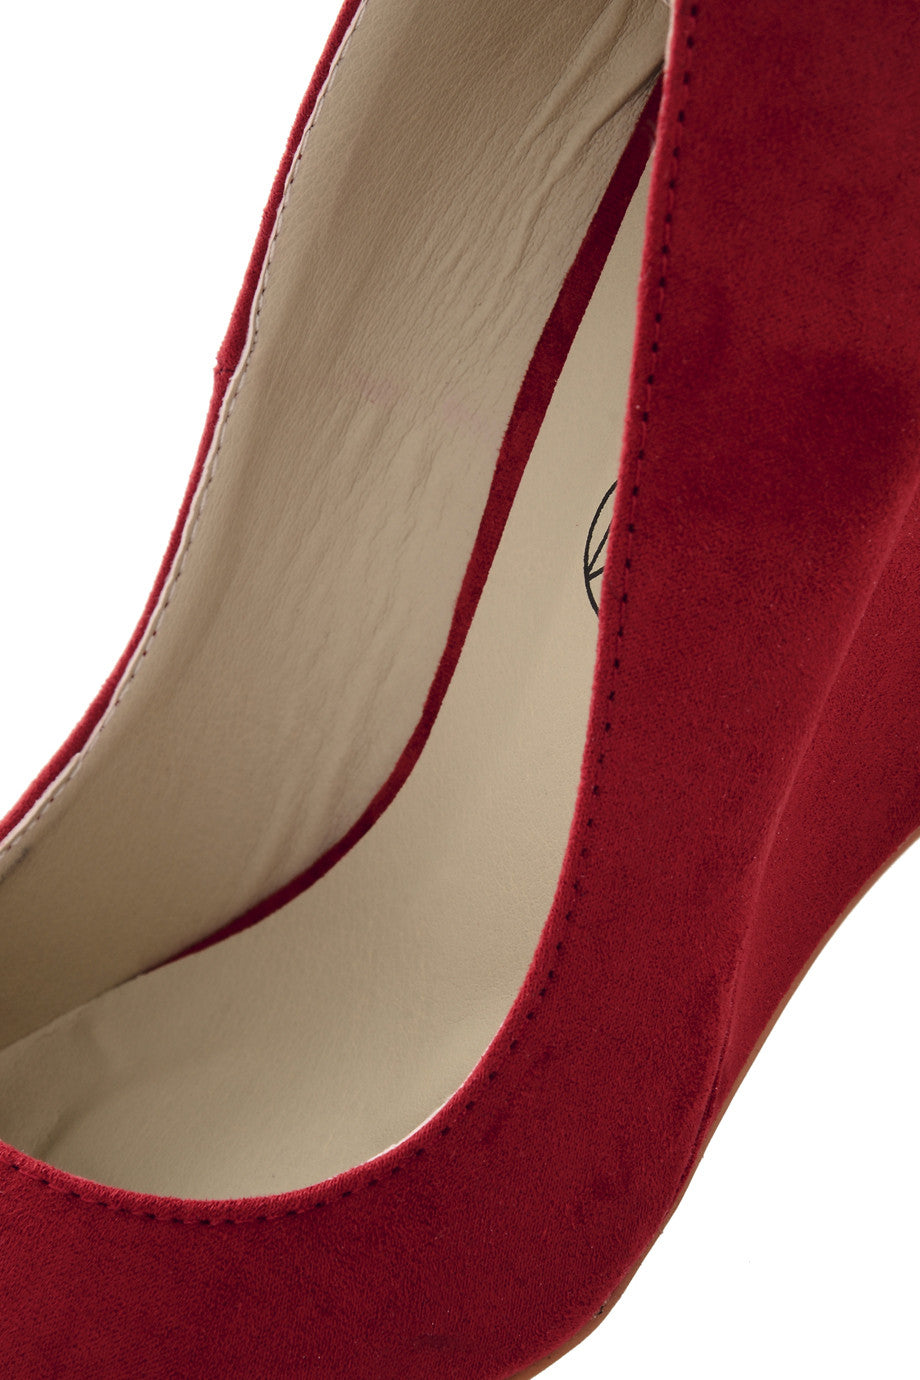 Κόκκινες Καστόρινες Πλατφόρμες | Γυναικεία Παπούτσια